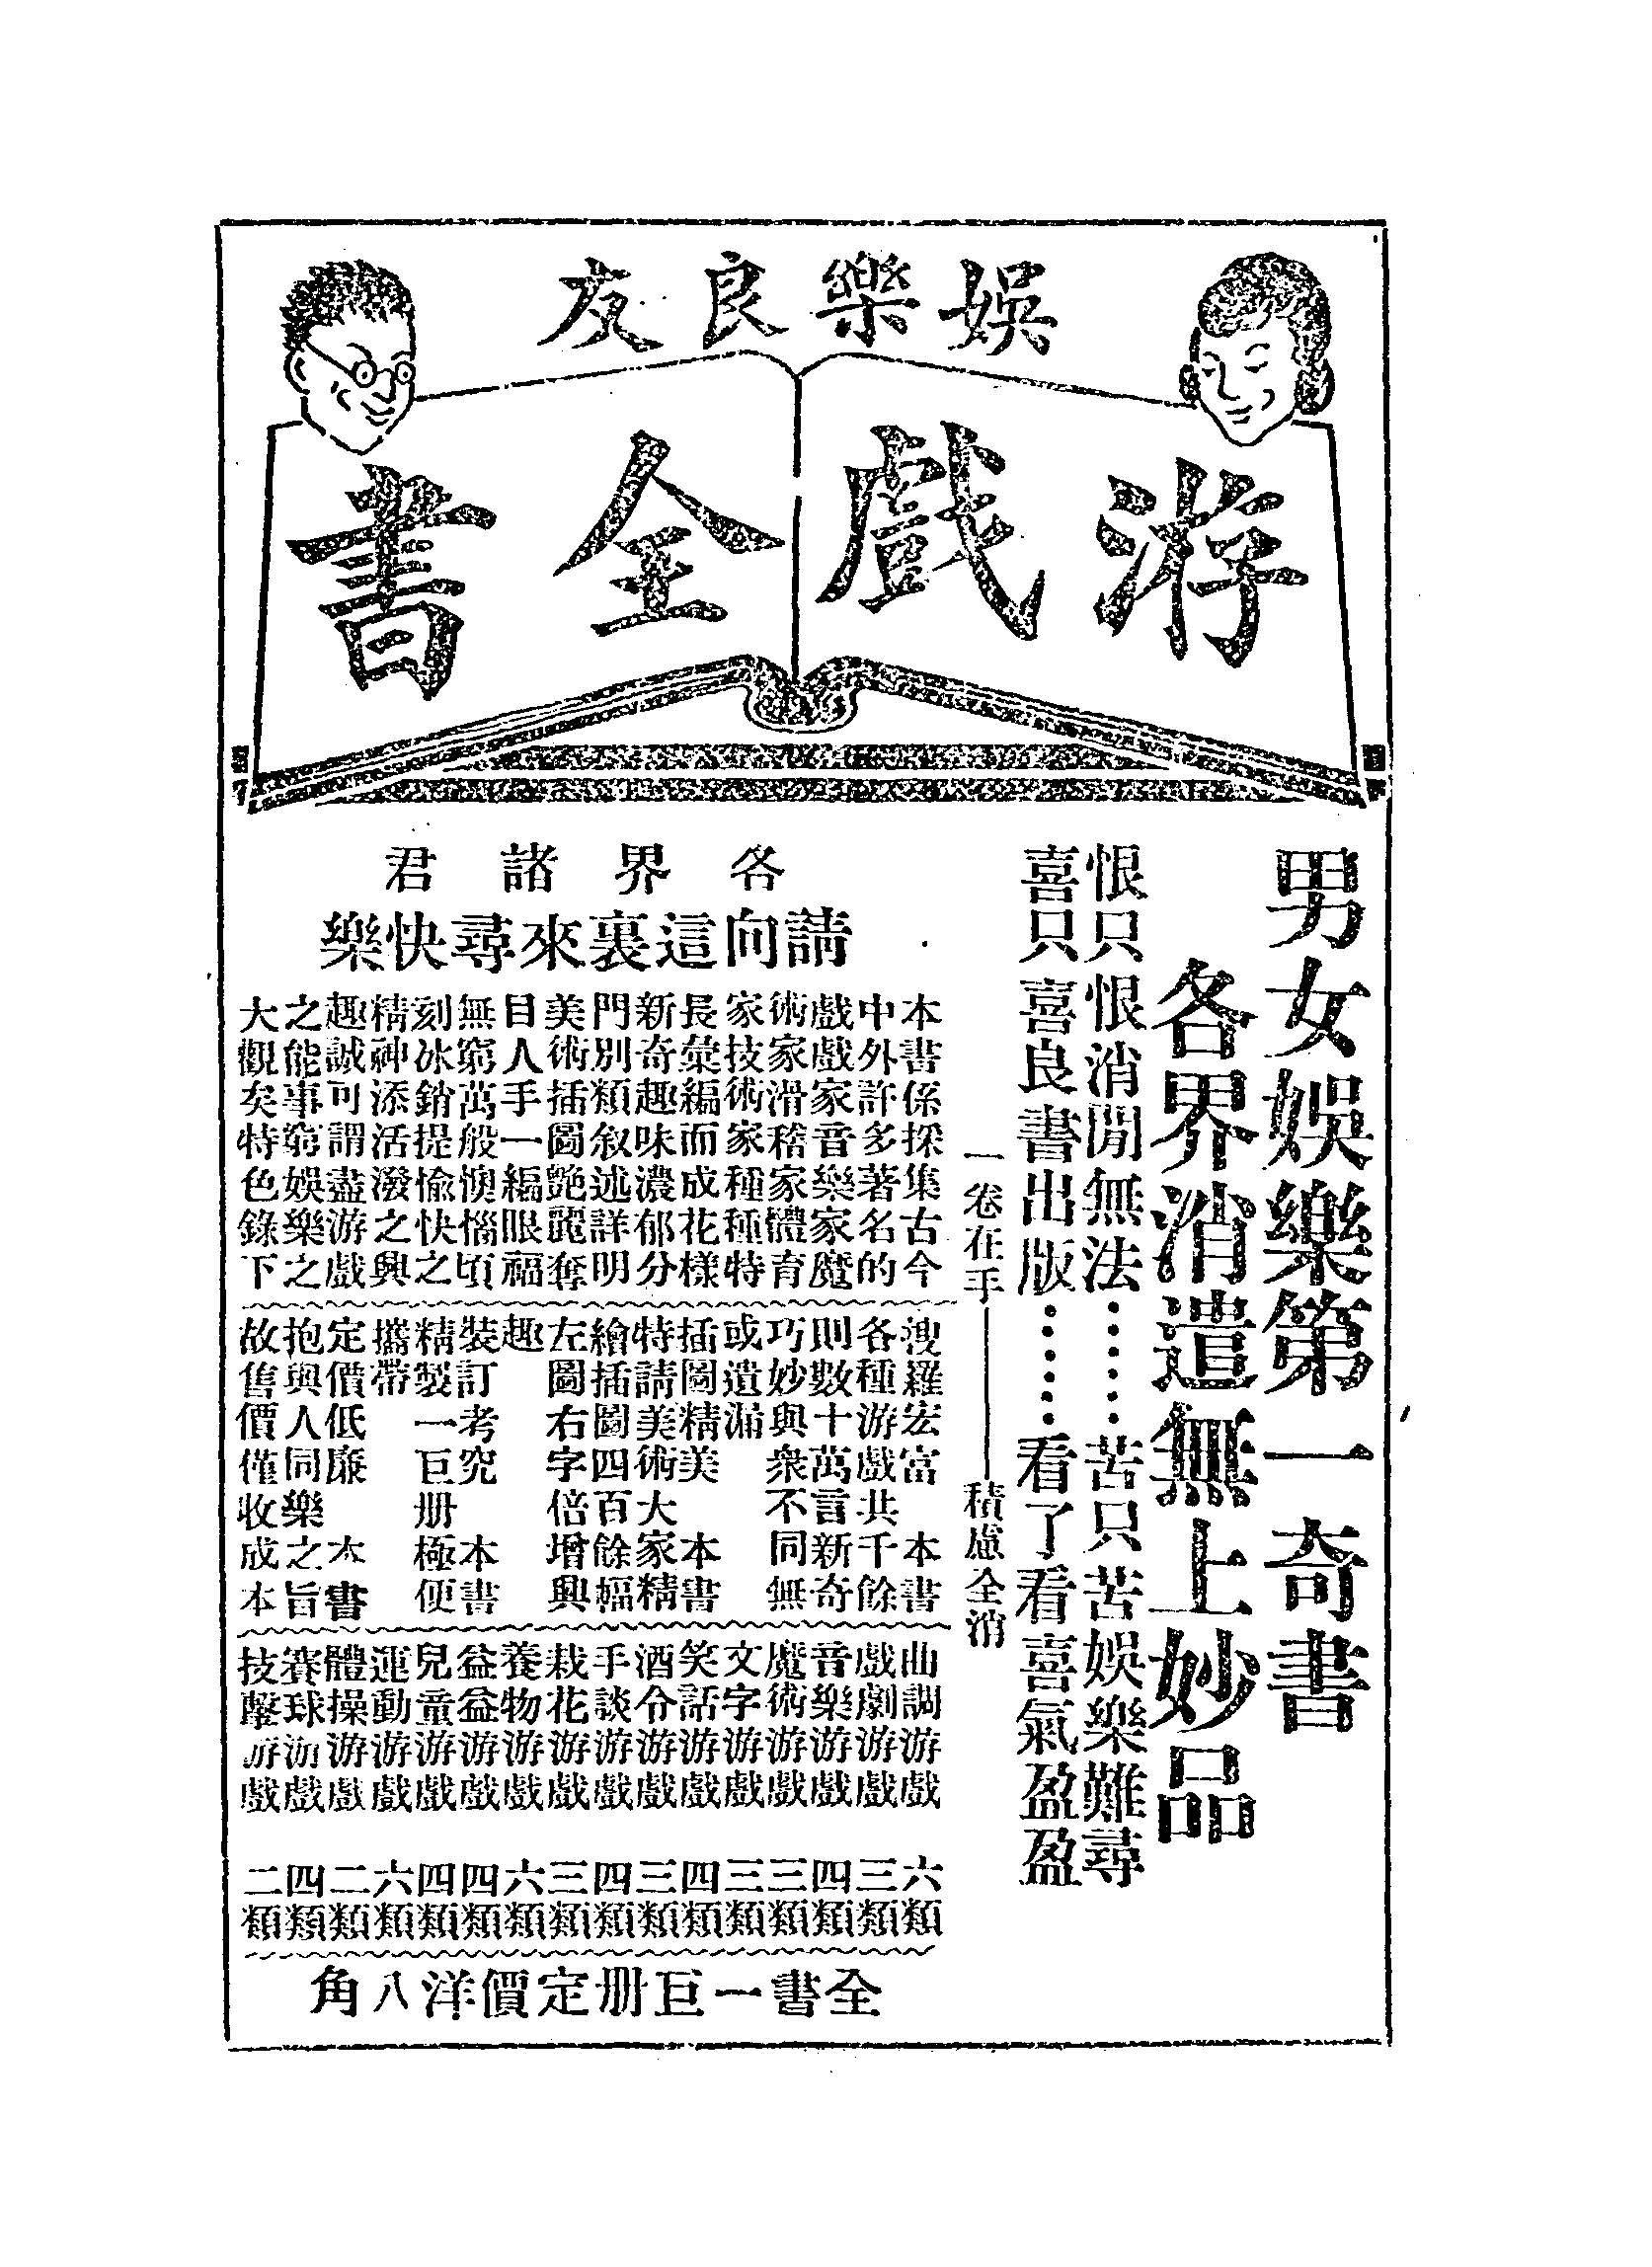 1924年《上海全图》插图7